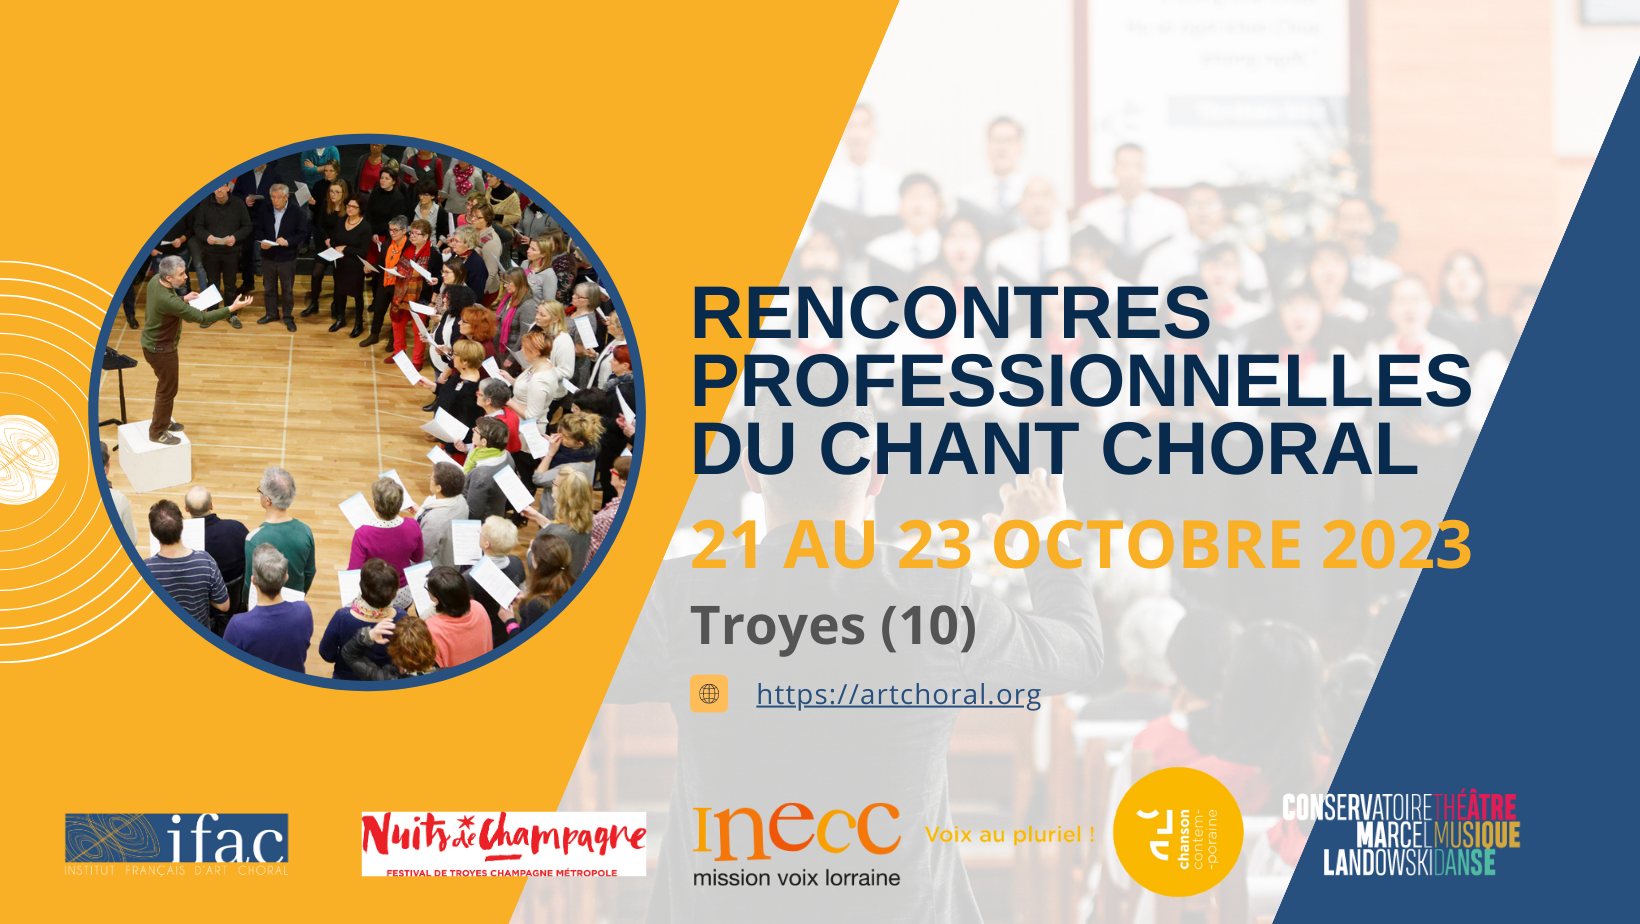 Rencontres professionnelles du chant choral – L'Institut français d'Art choral